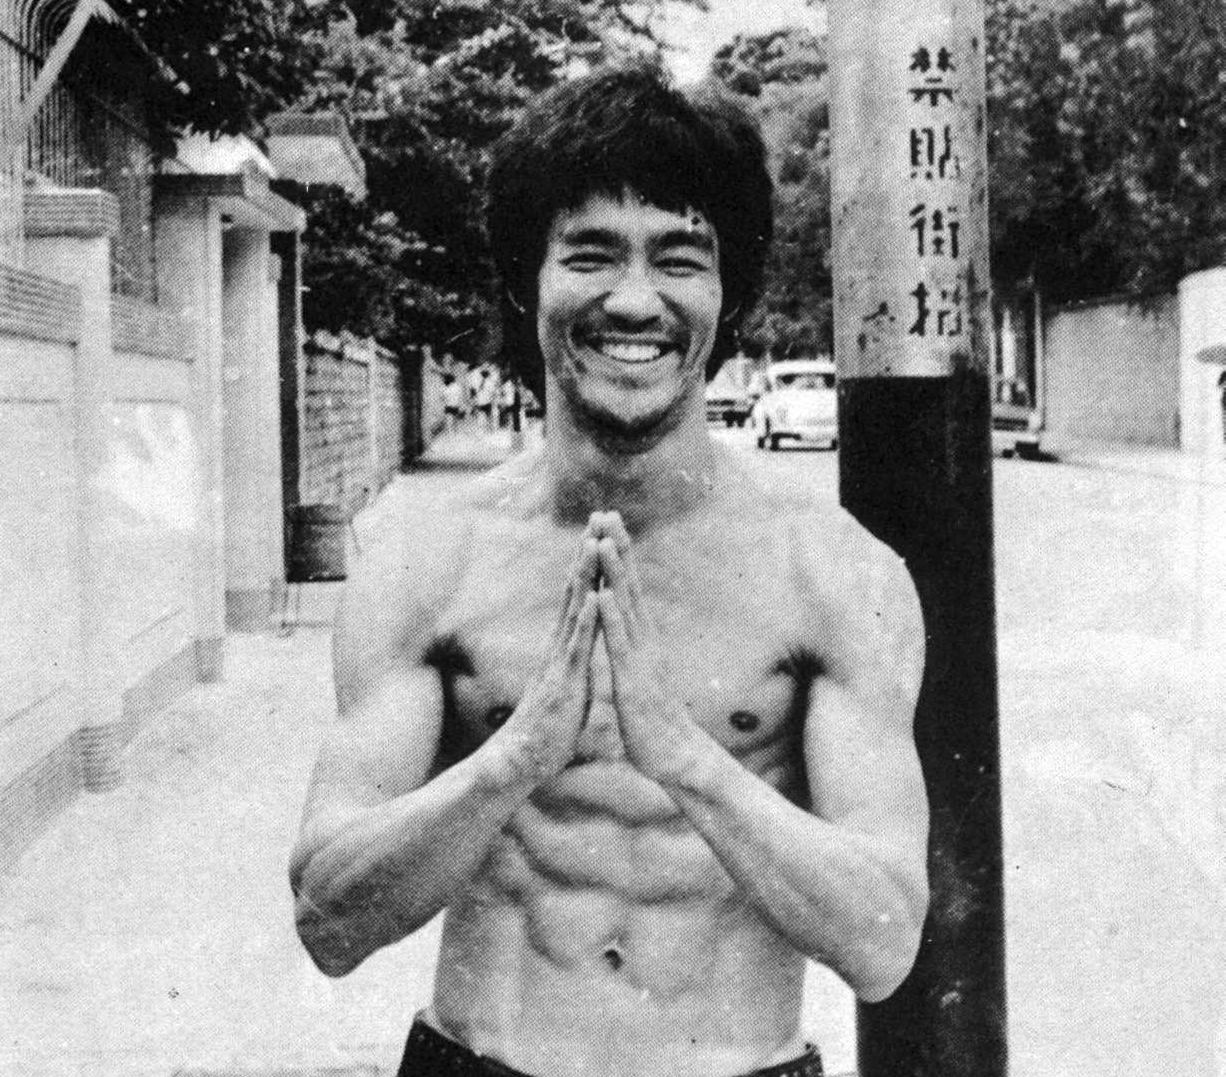 Bruce Lee - Images